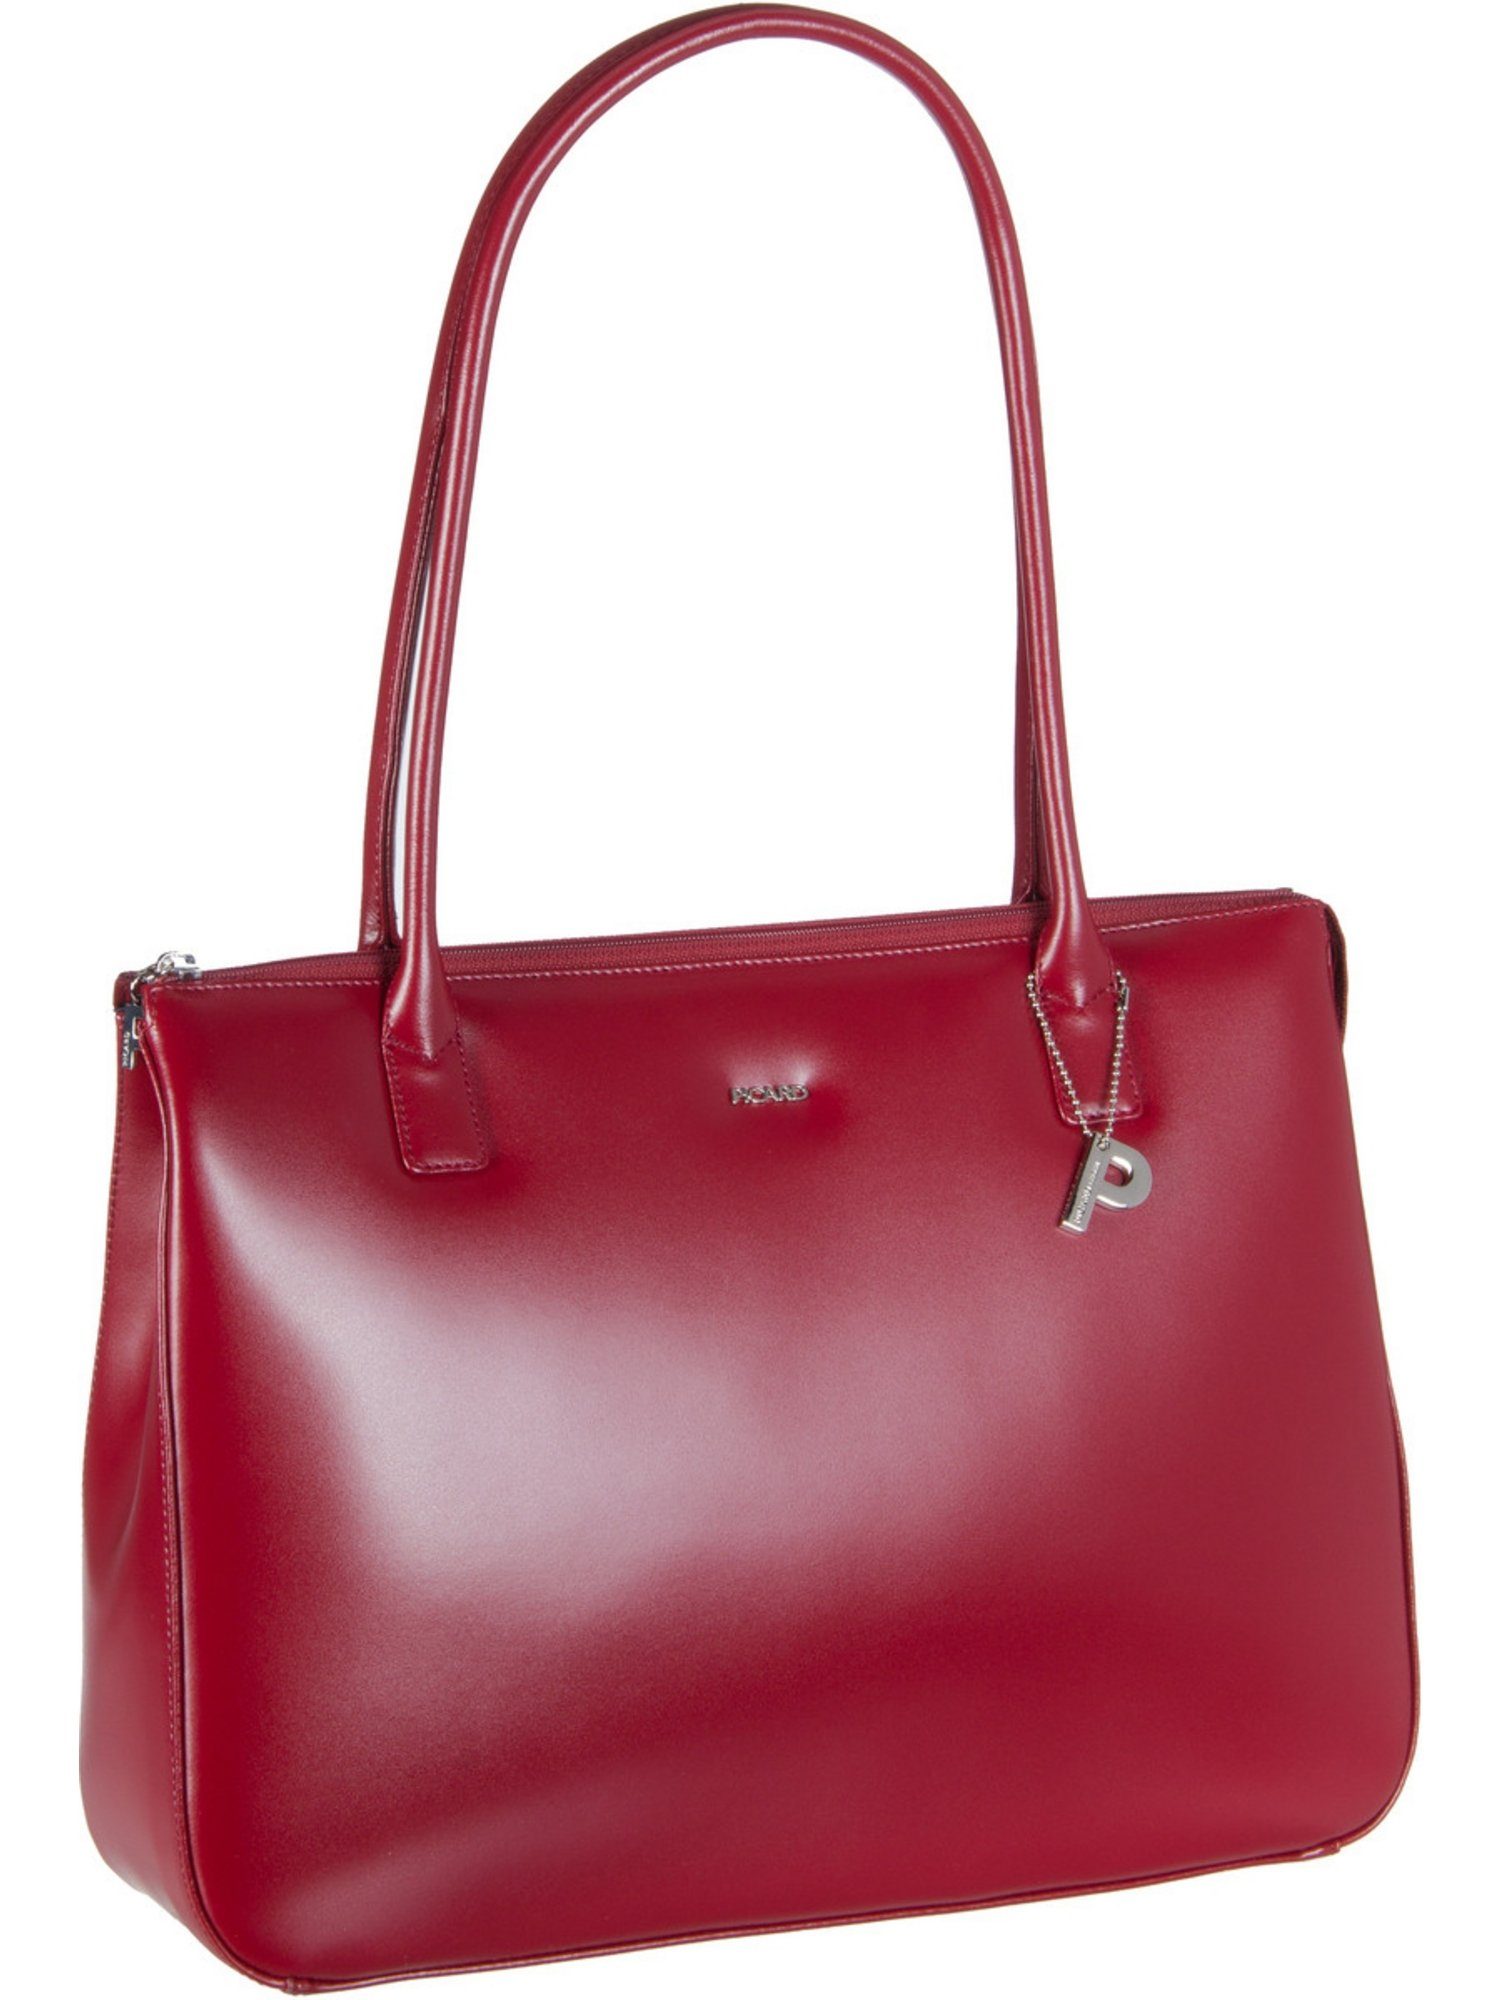 Picard Handtasche »Promo 5 Ledertasche«, Schultertasche online kaufen | OTTO